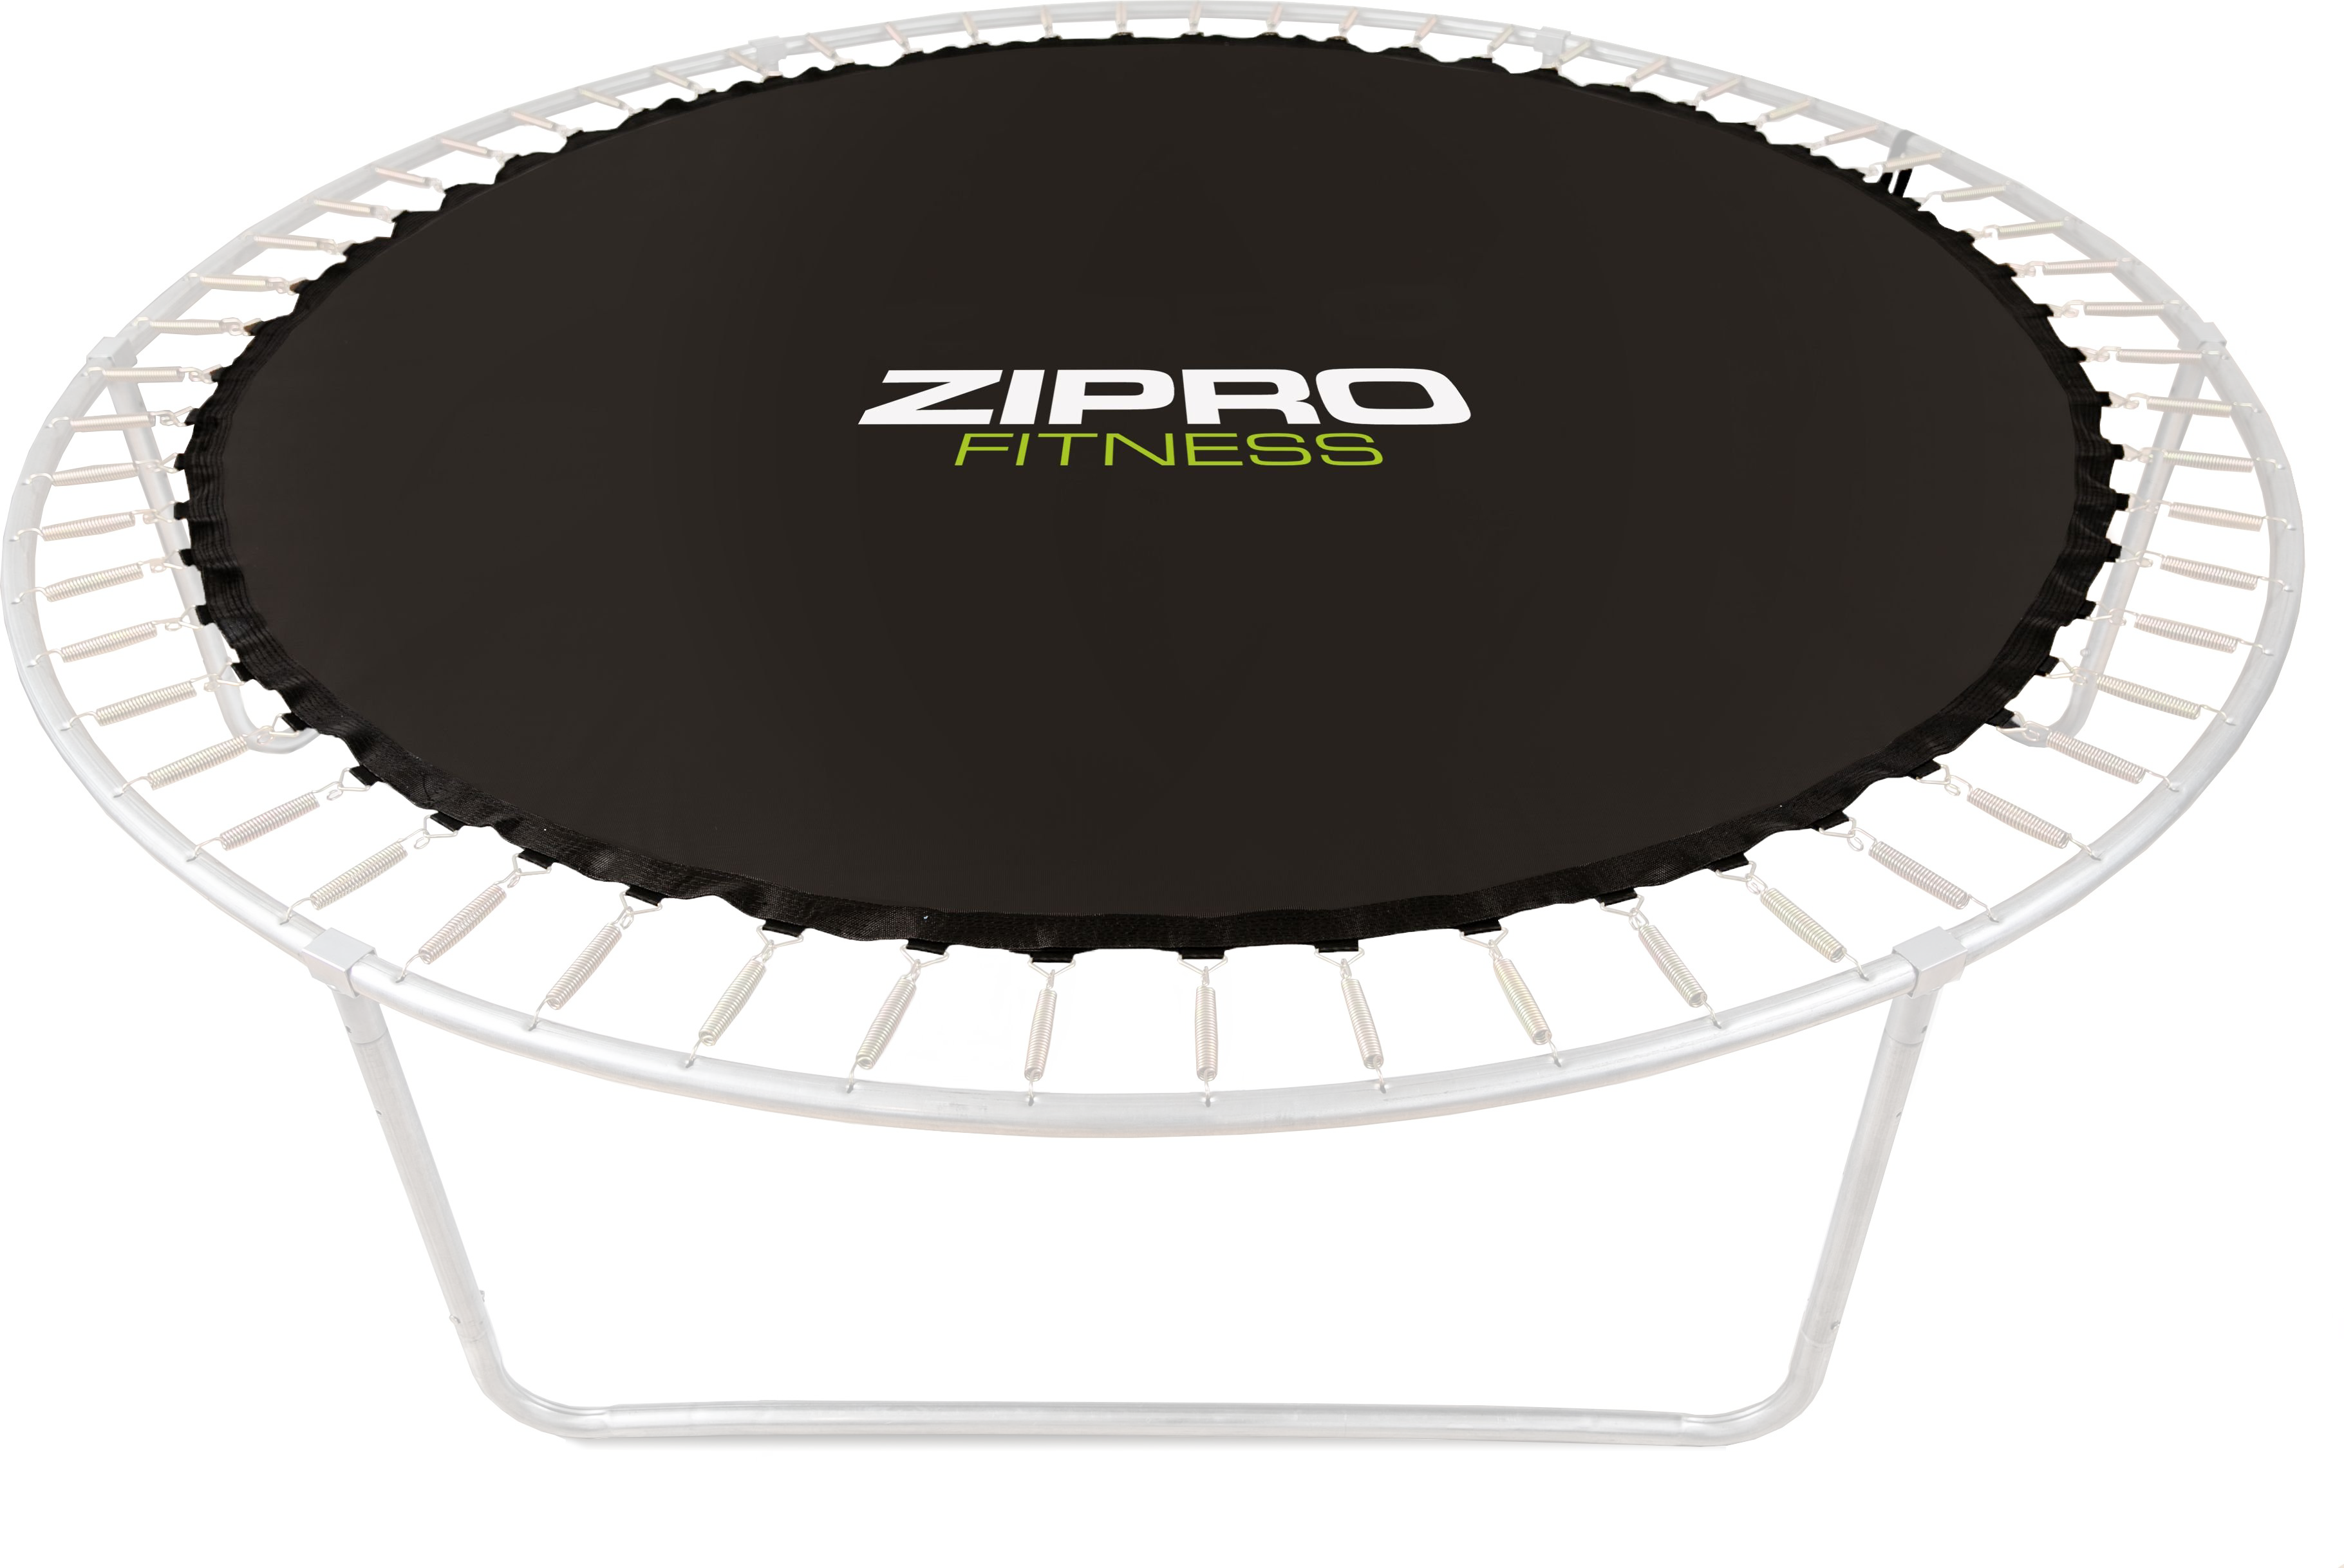 Zipro Batut - mata do skakania do trampoliny 8FT/252cm 5825223